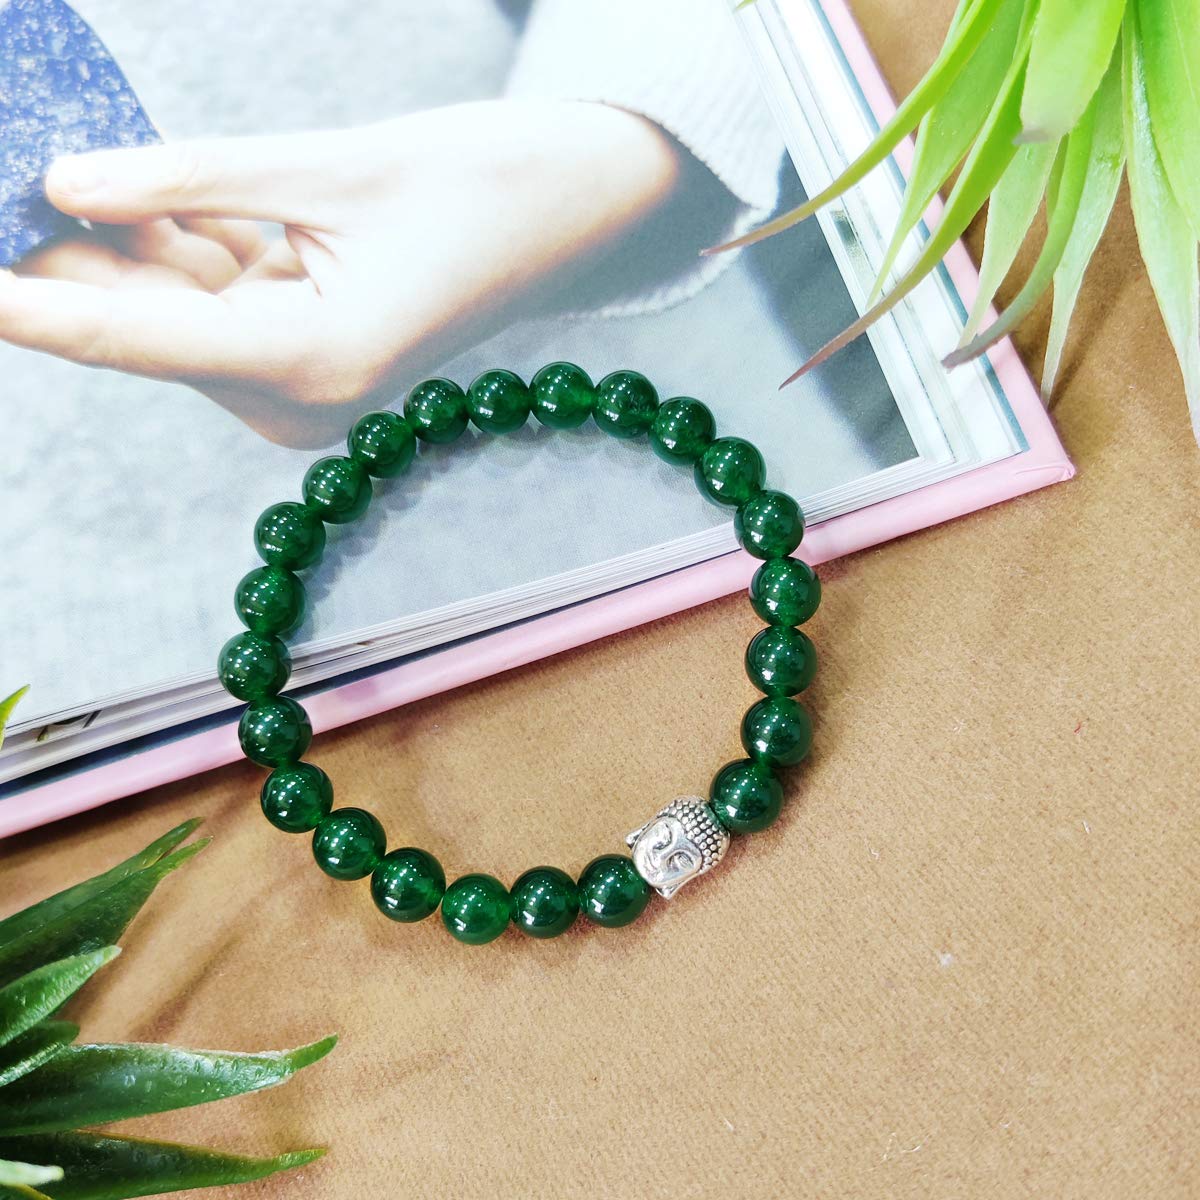 Bluequeen Green Jade Crystal Elastic 8mm Stretch Crystal Yoga,Meditation Buddha Bracelet